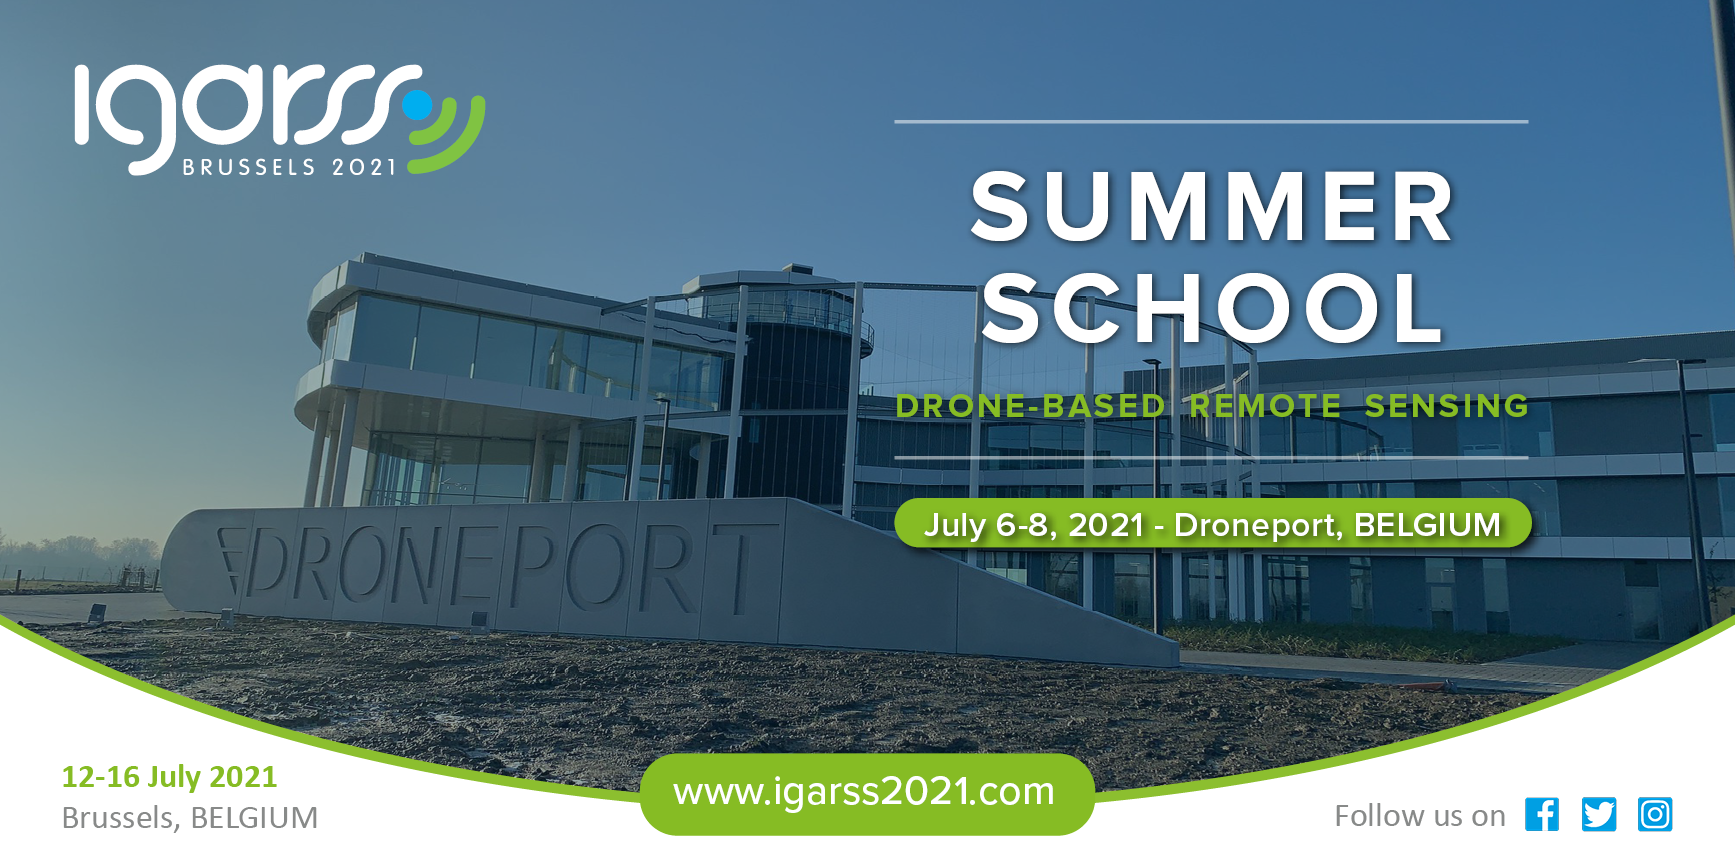 IGARSS21 Summer School Registration